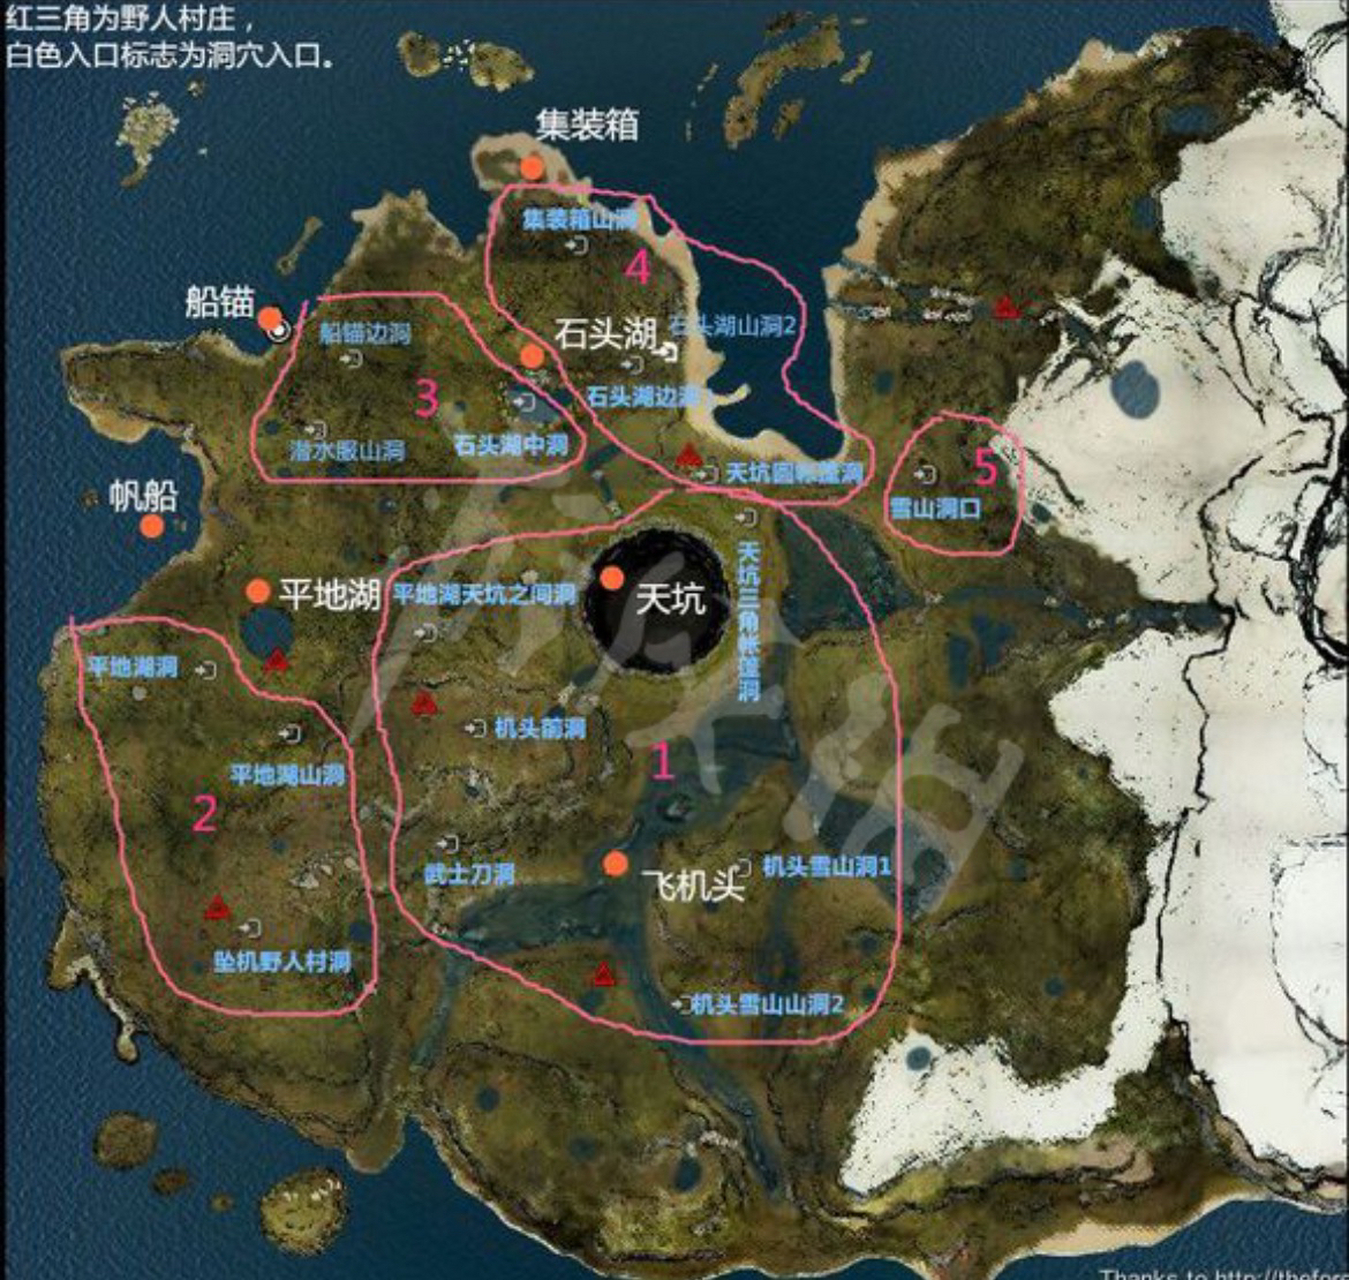 steam森林 the forest地图攻略 1是游戏全地图 2是游戏内洞穴地图